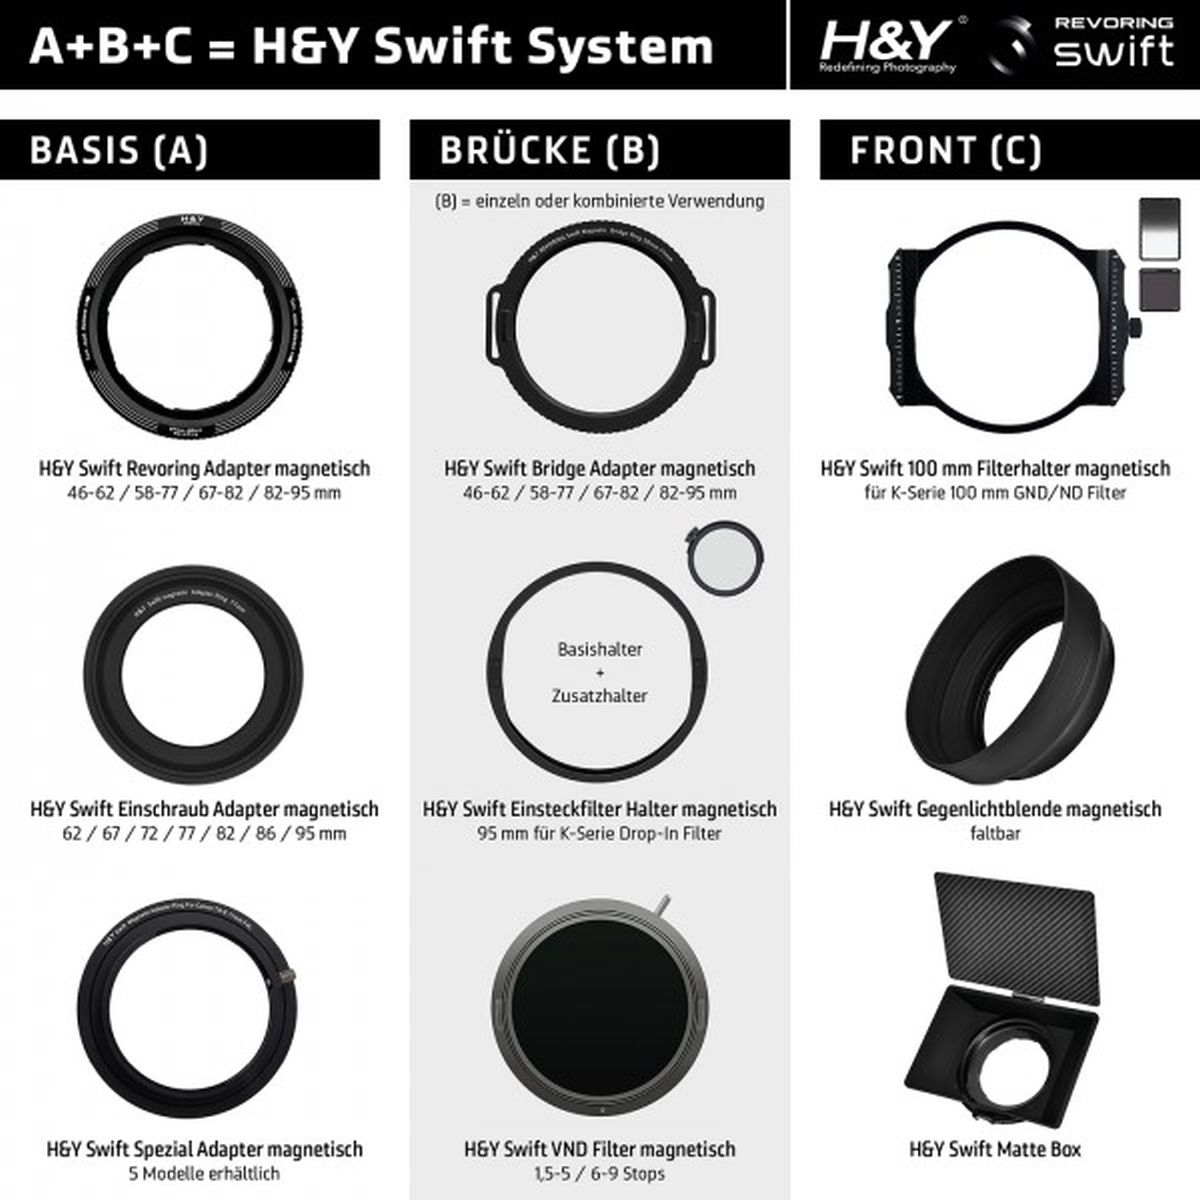 H&Y Swift C 100 mm Filterhalter magnetisch